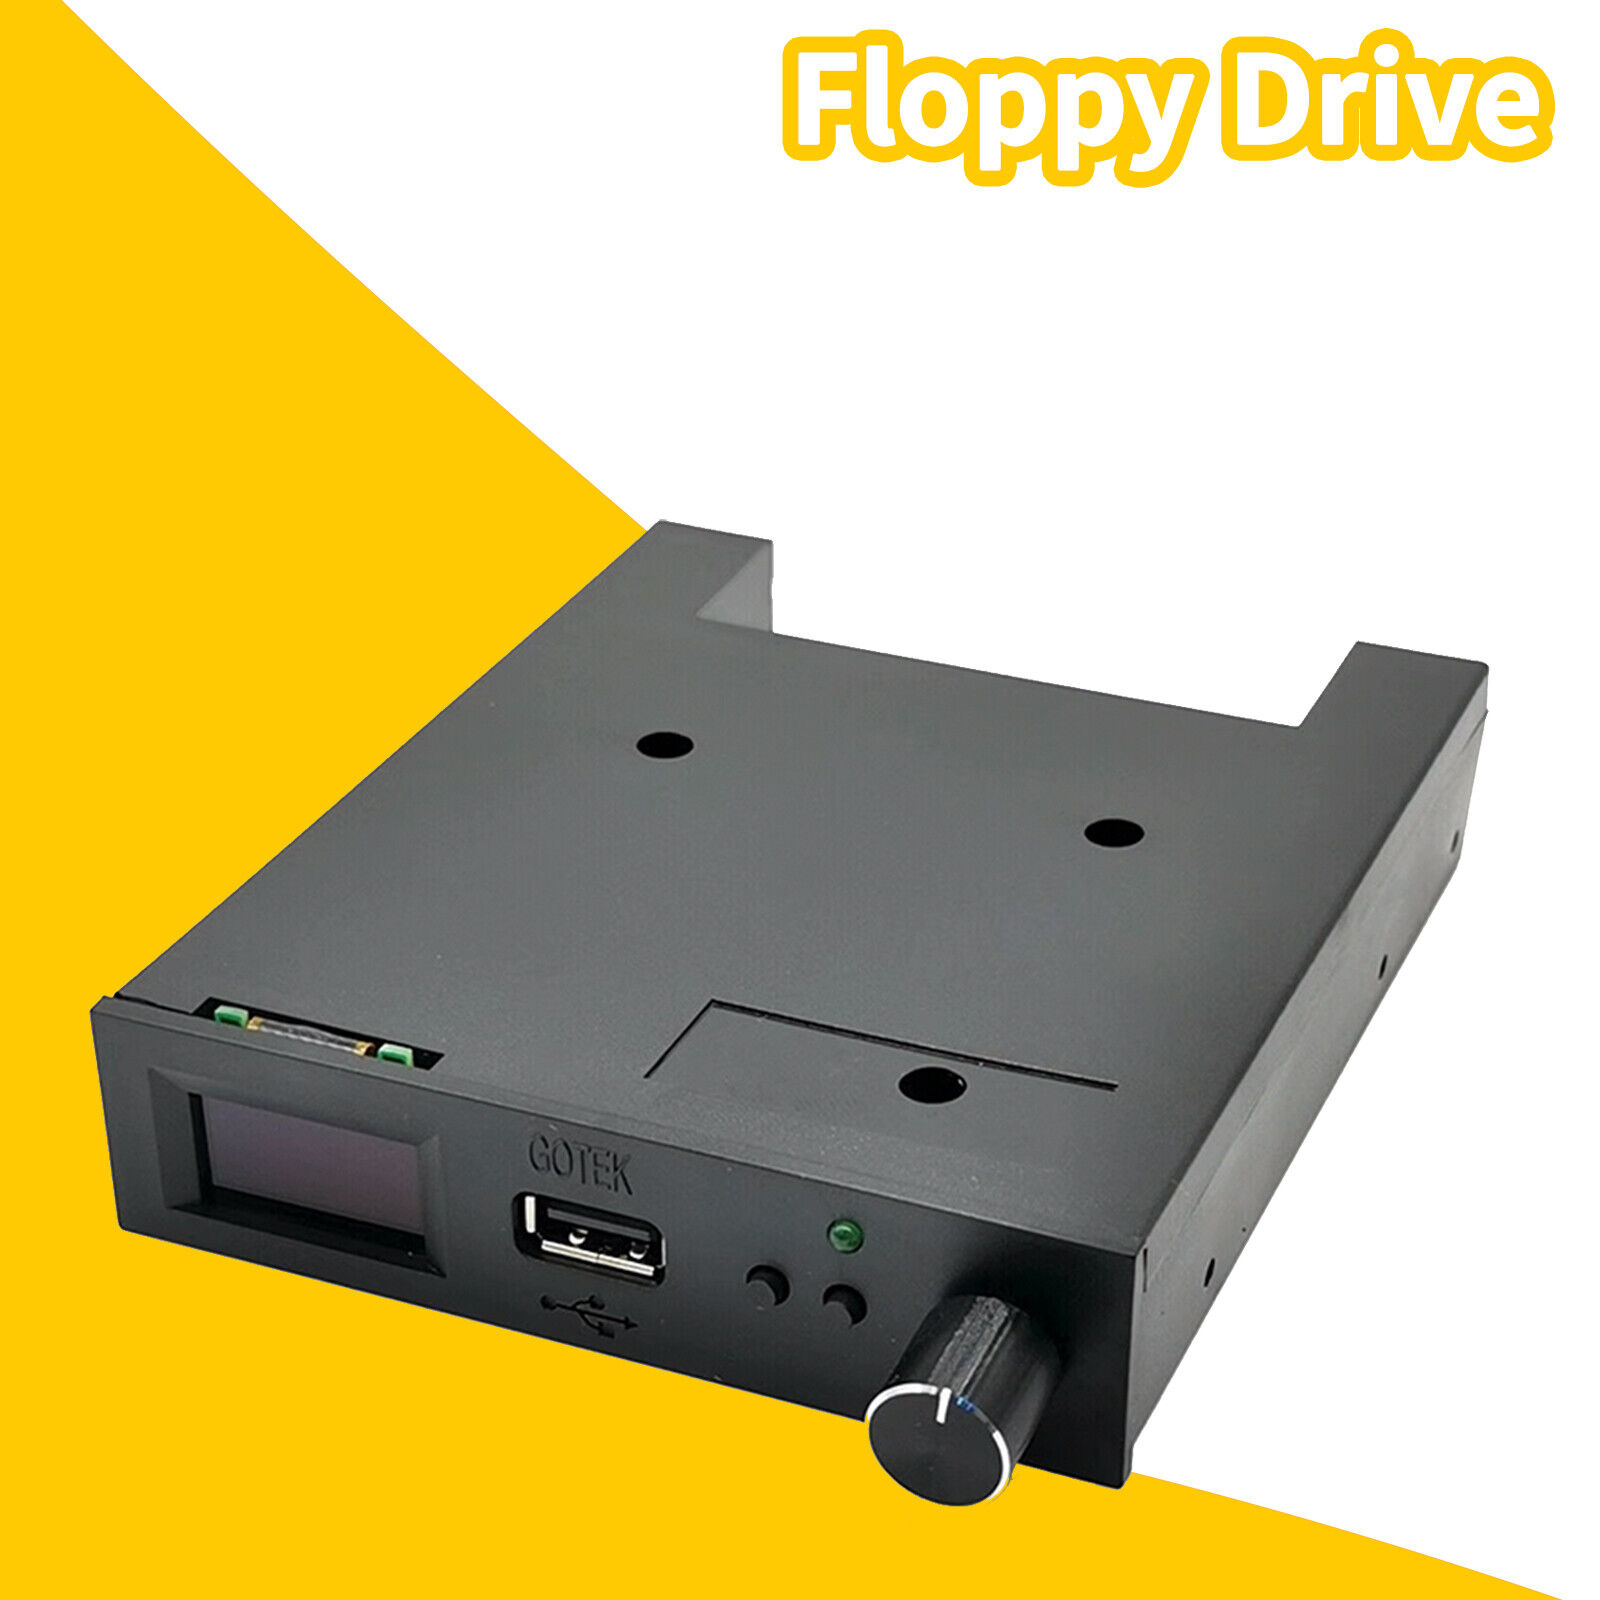 Newest FlashFloppy firmware V3.41 (GOTEK) Floppy emulator with OLEDms